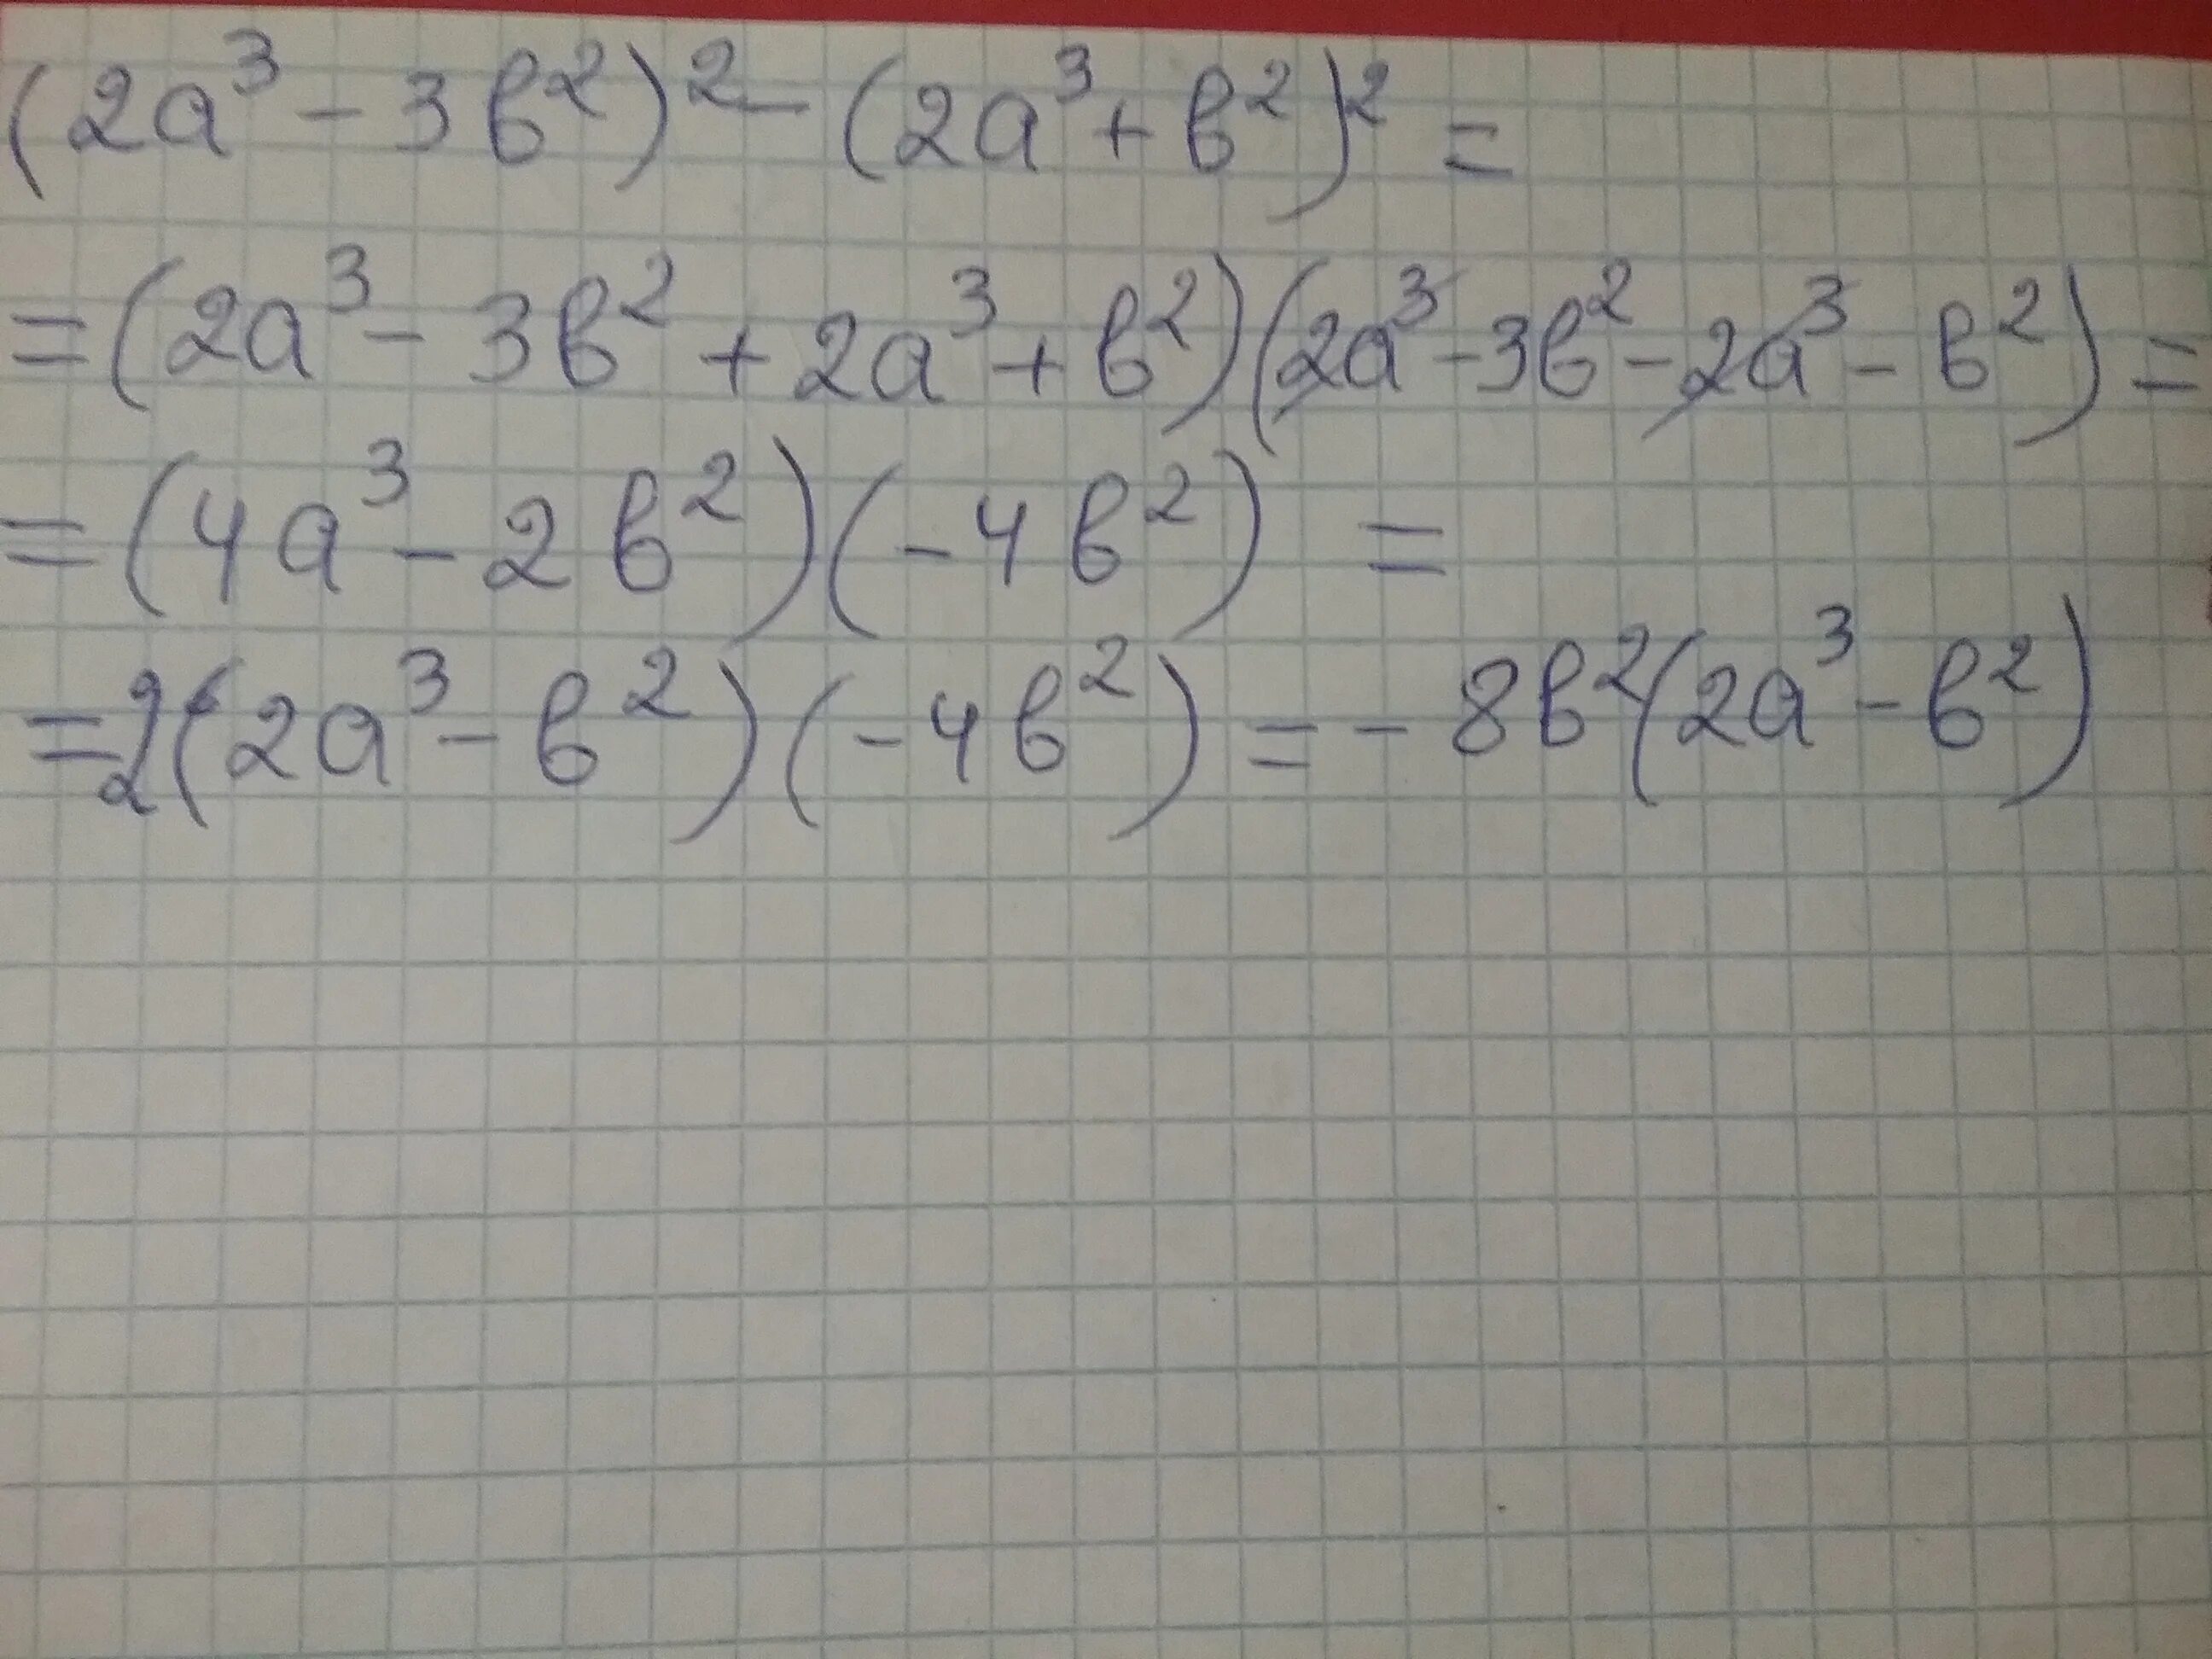 2a 3b a b a 2b. (A-B)(2a+3b). 3(A+2)+B(A+2). 2a-3/2a-b-2/b. (A+B)^3/B^2-A^2.